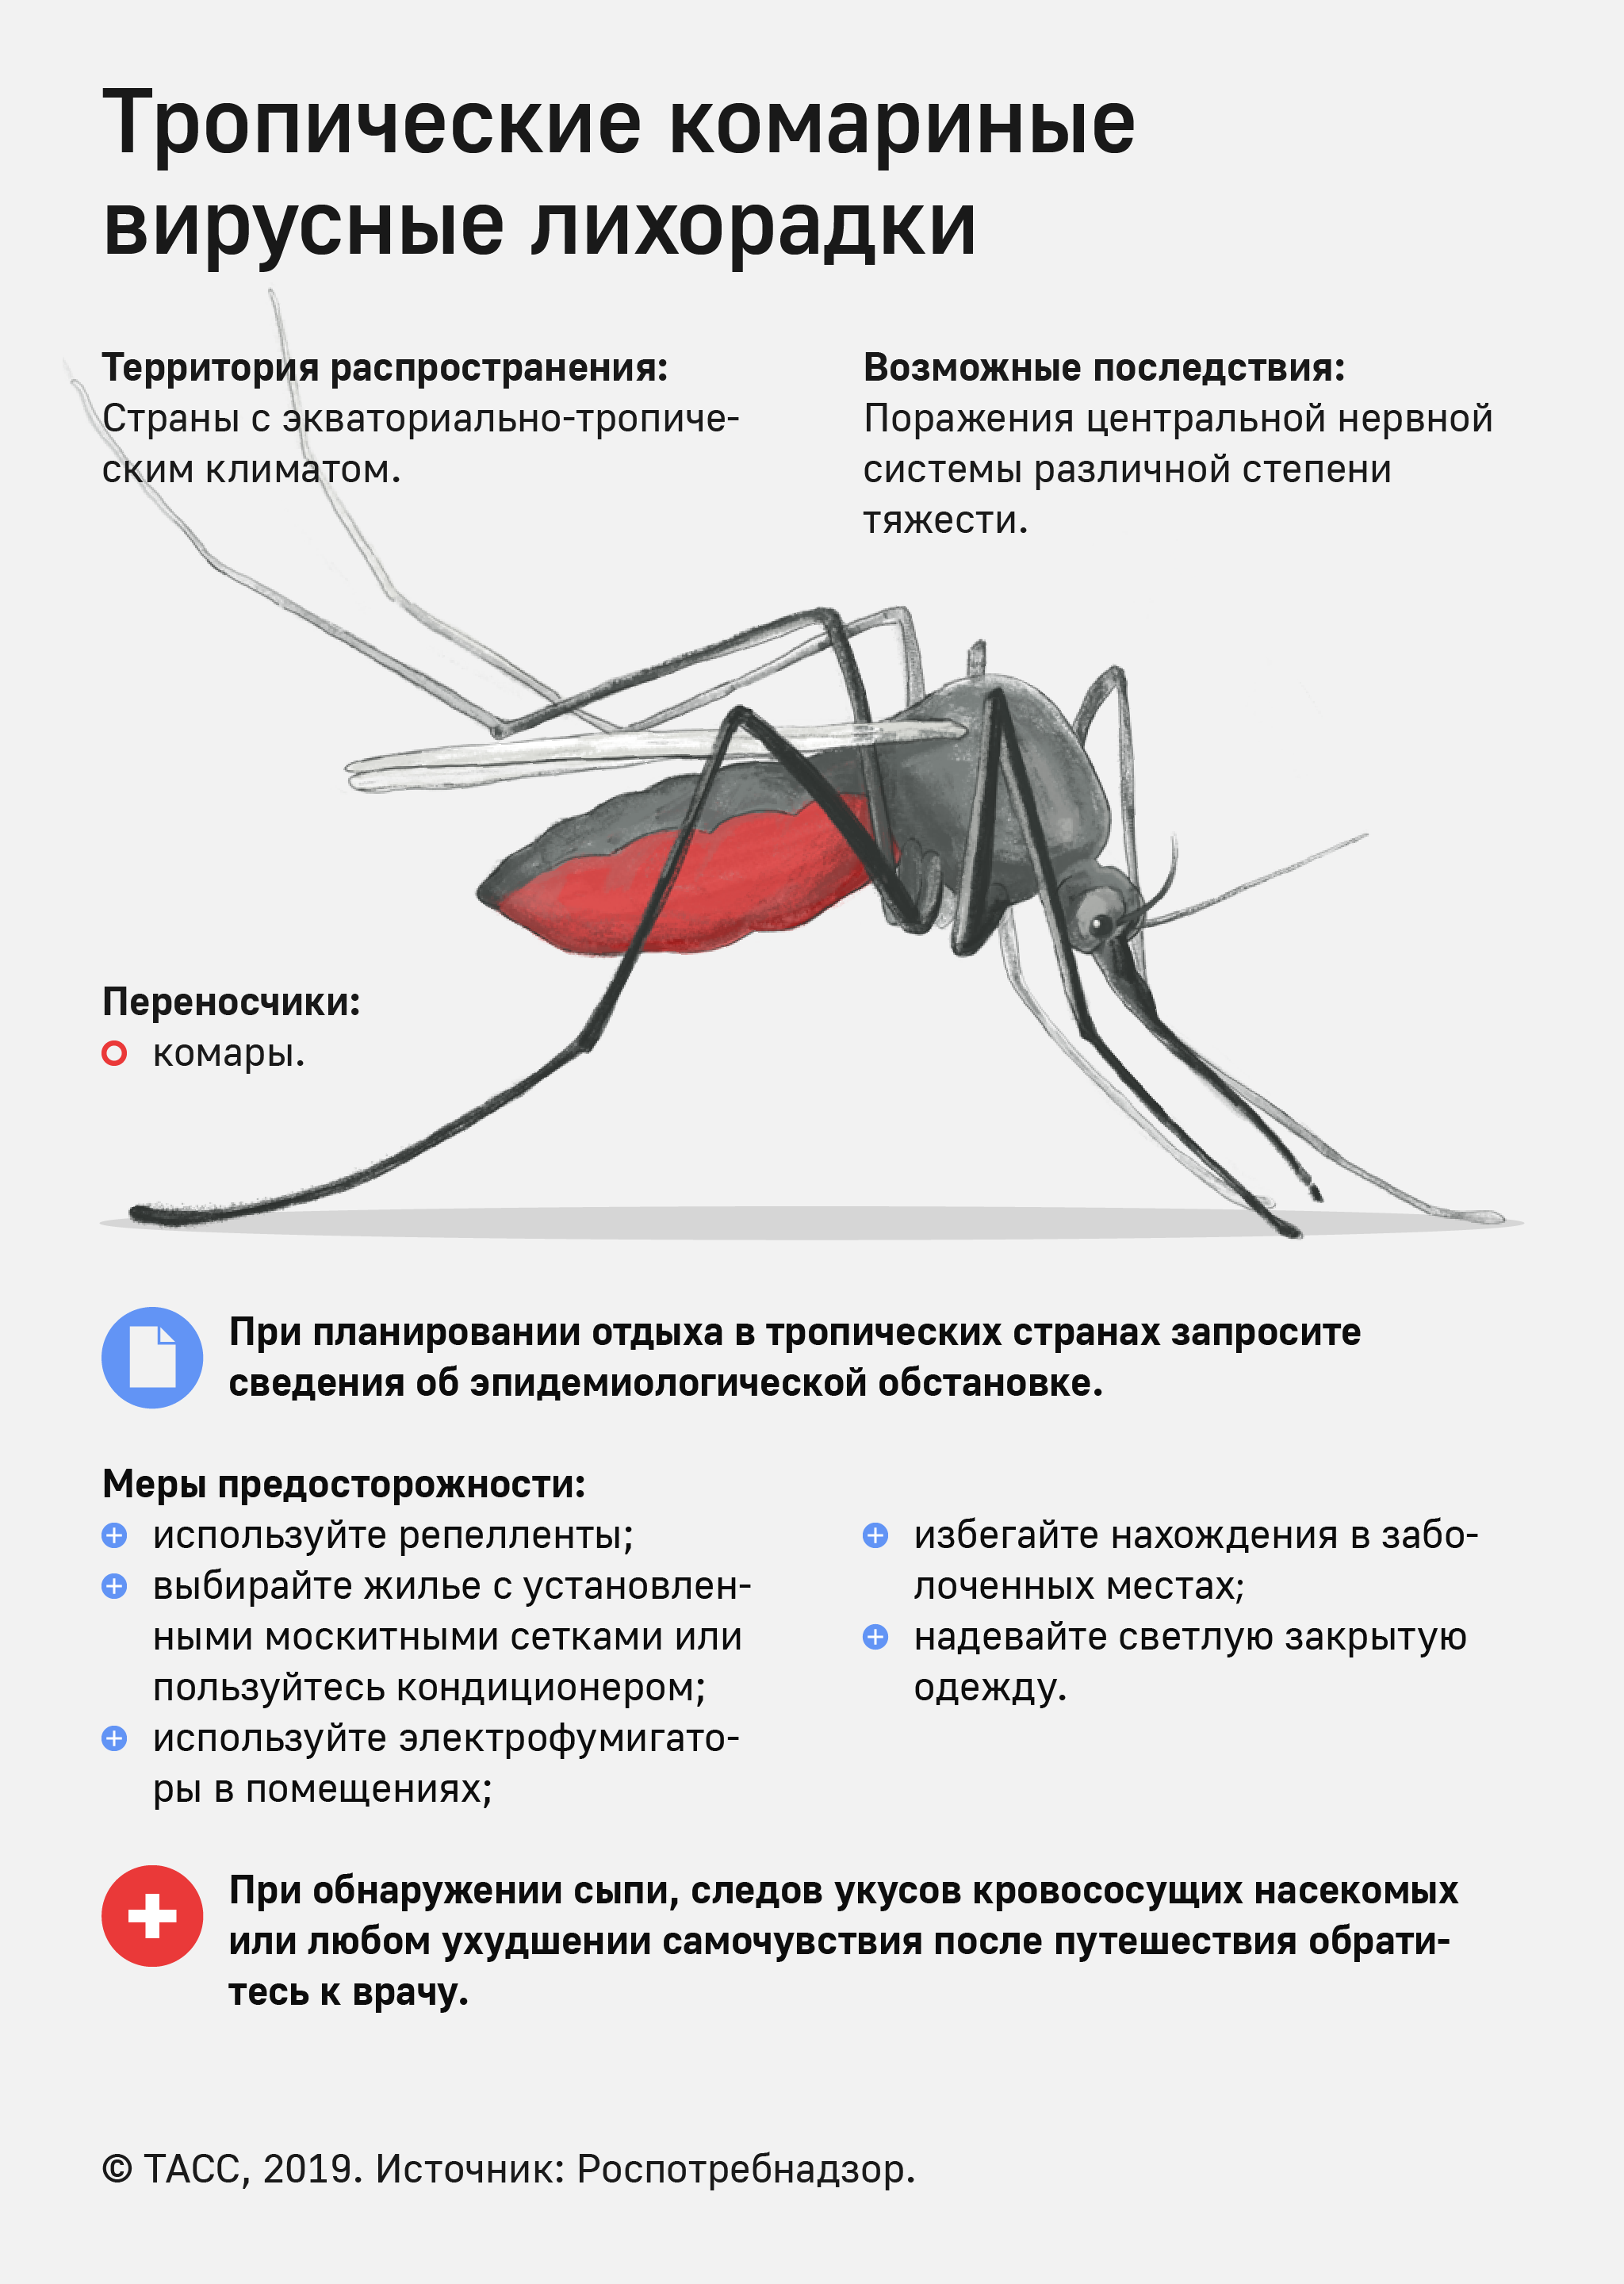 Комары переносчики заболеваний. Малярийный комар болезнь. Профилактика от малярийного комара. Памятка по профилактике малярии.